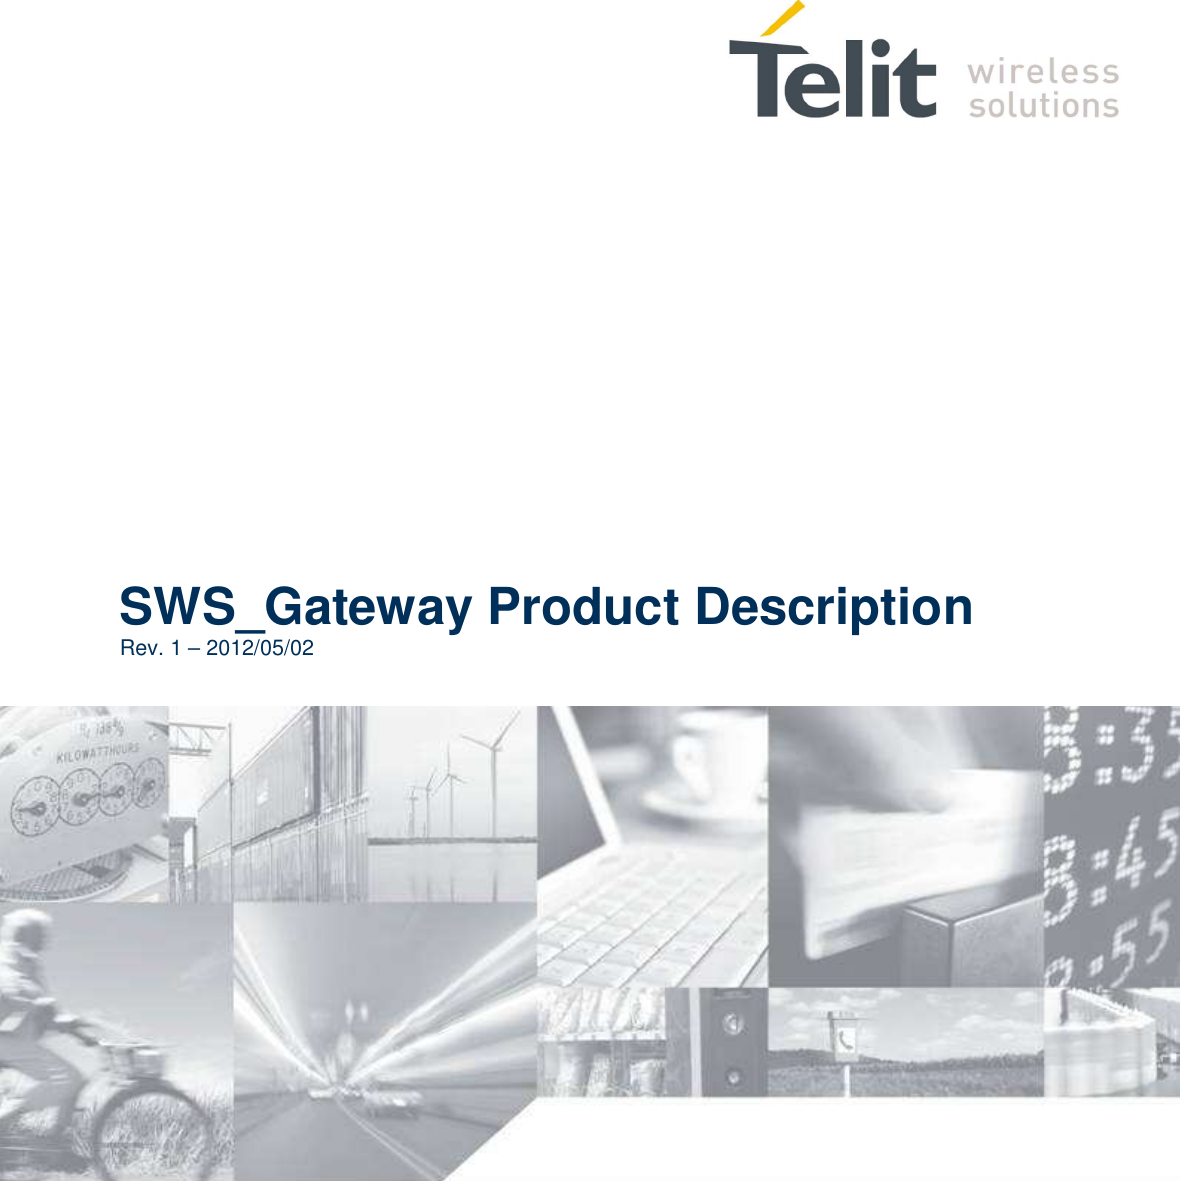                   SWS_Gateway Product Description Rev. 1 – 2012/05/02       